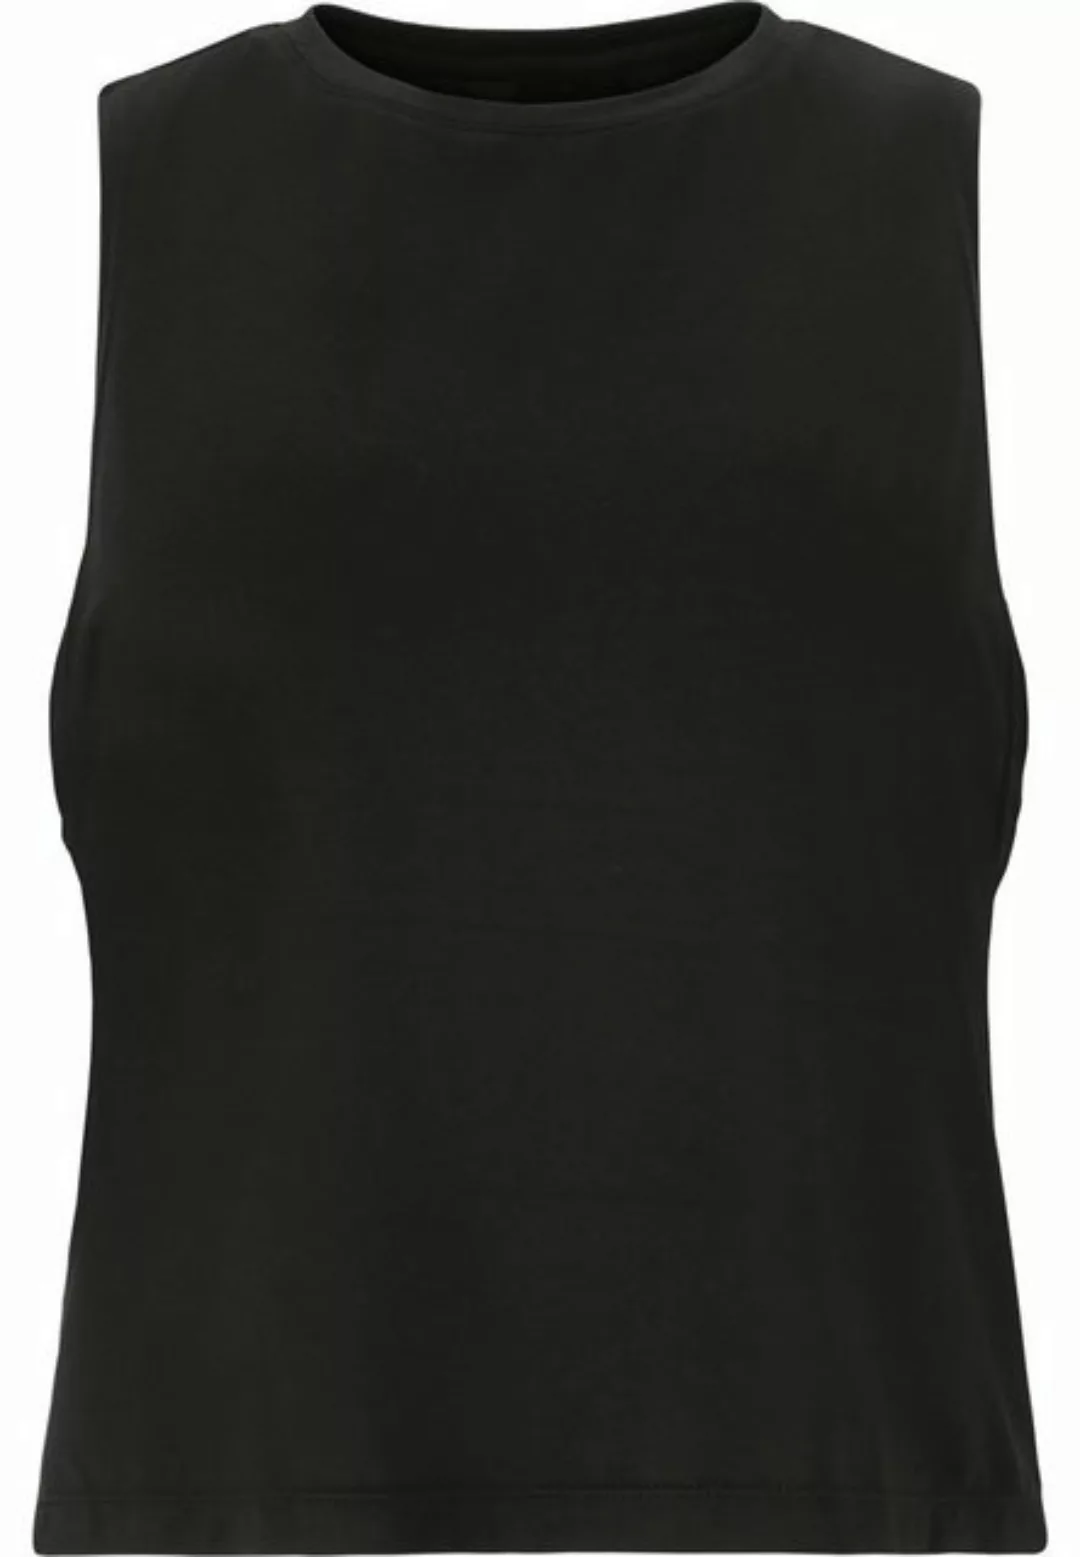 ATHLECIA T-Shirt Pacy W Damen Sport-Top schwarz günstig online kaufen